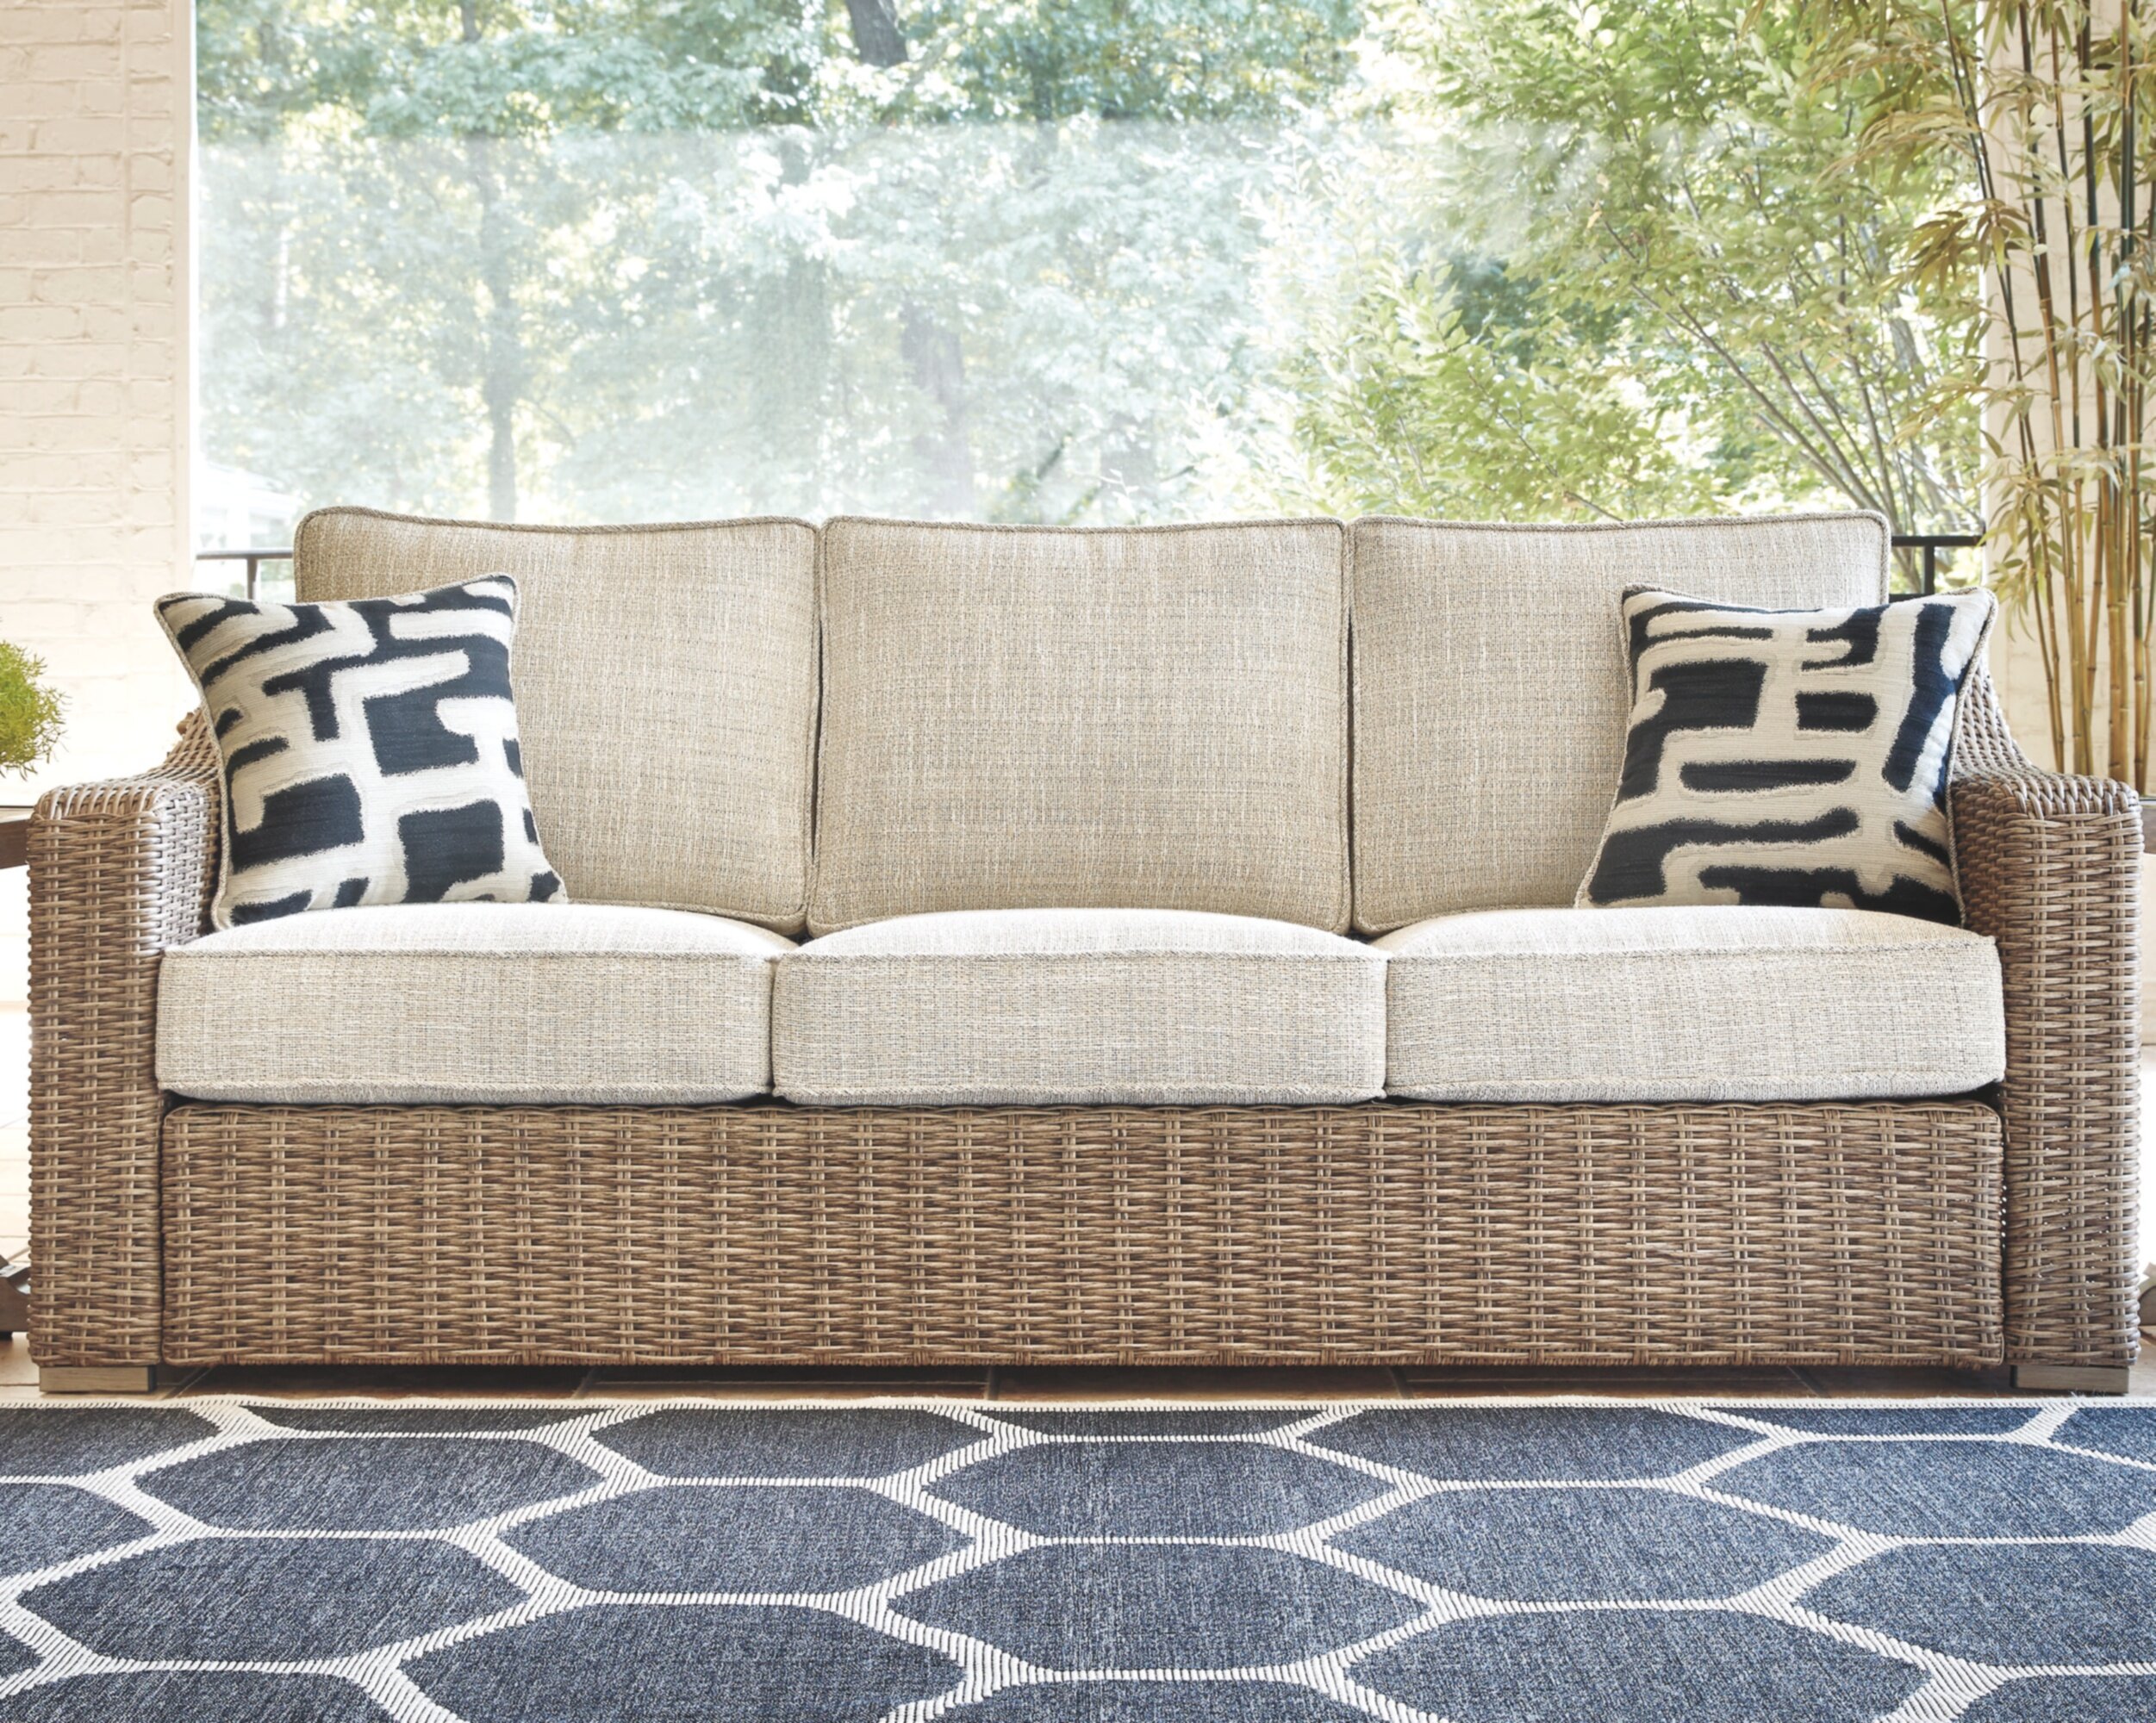 Wicker Couch Cushions : Eldridge Wicker Patio Sofa With Sunbrella